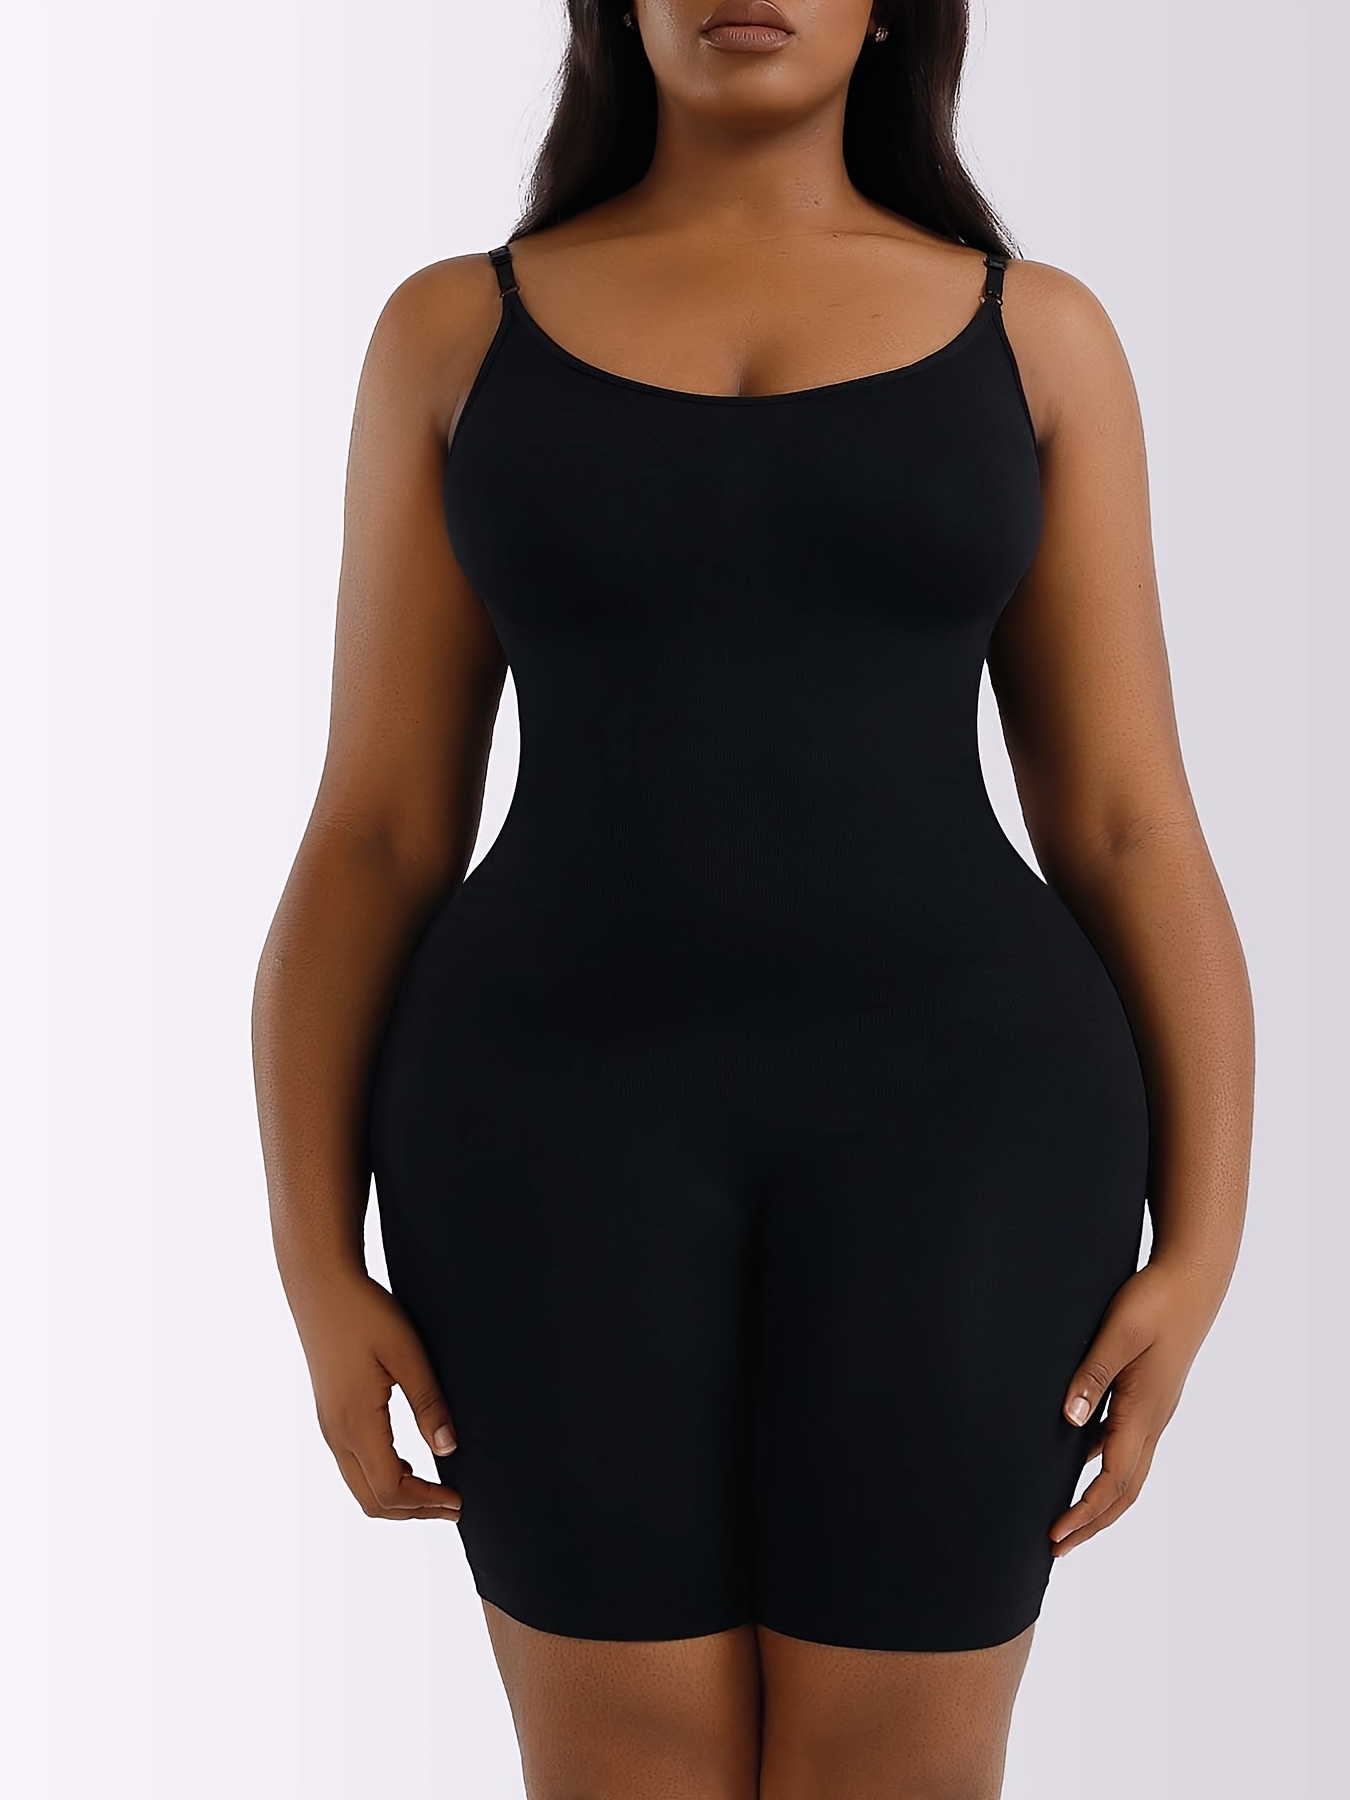 Ladies' Zipper Bodysuit Suspender Hip Lift Seamless Breathable Corset  Bodysuit Express Body Suit : : Clothing, Shoes & Accessories